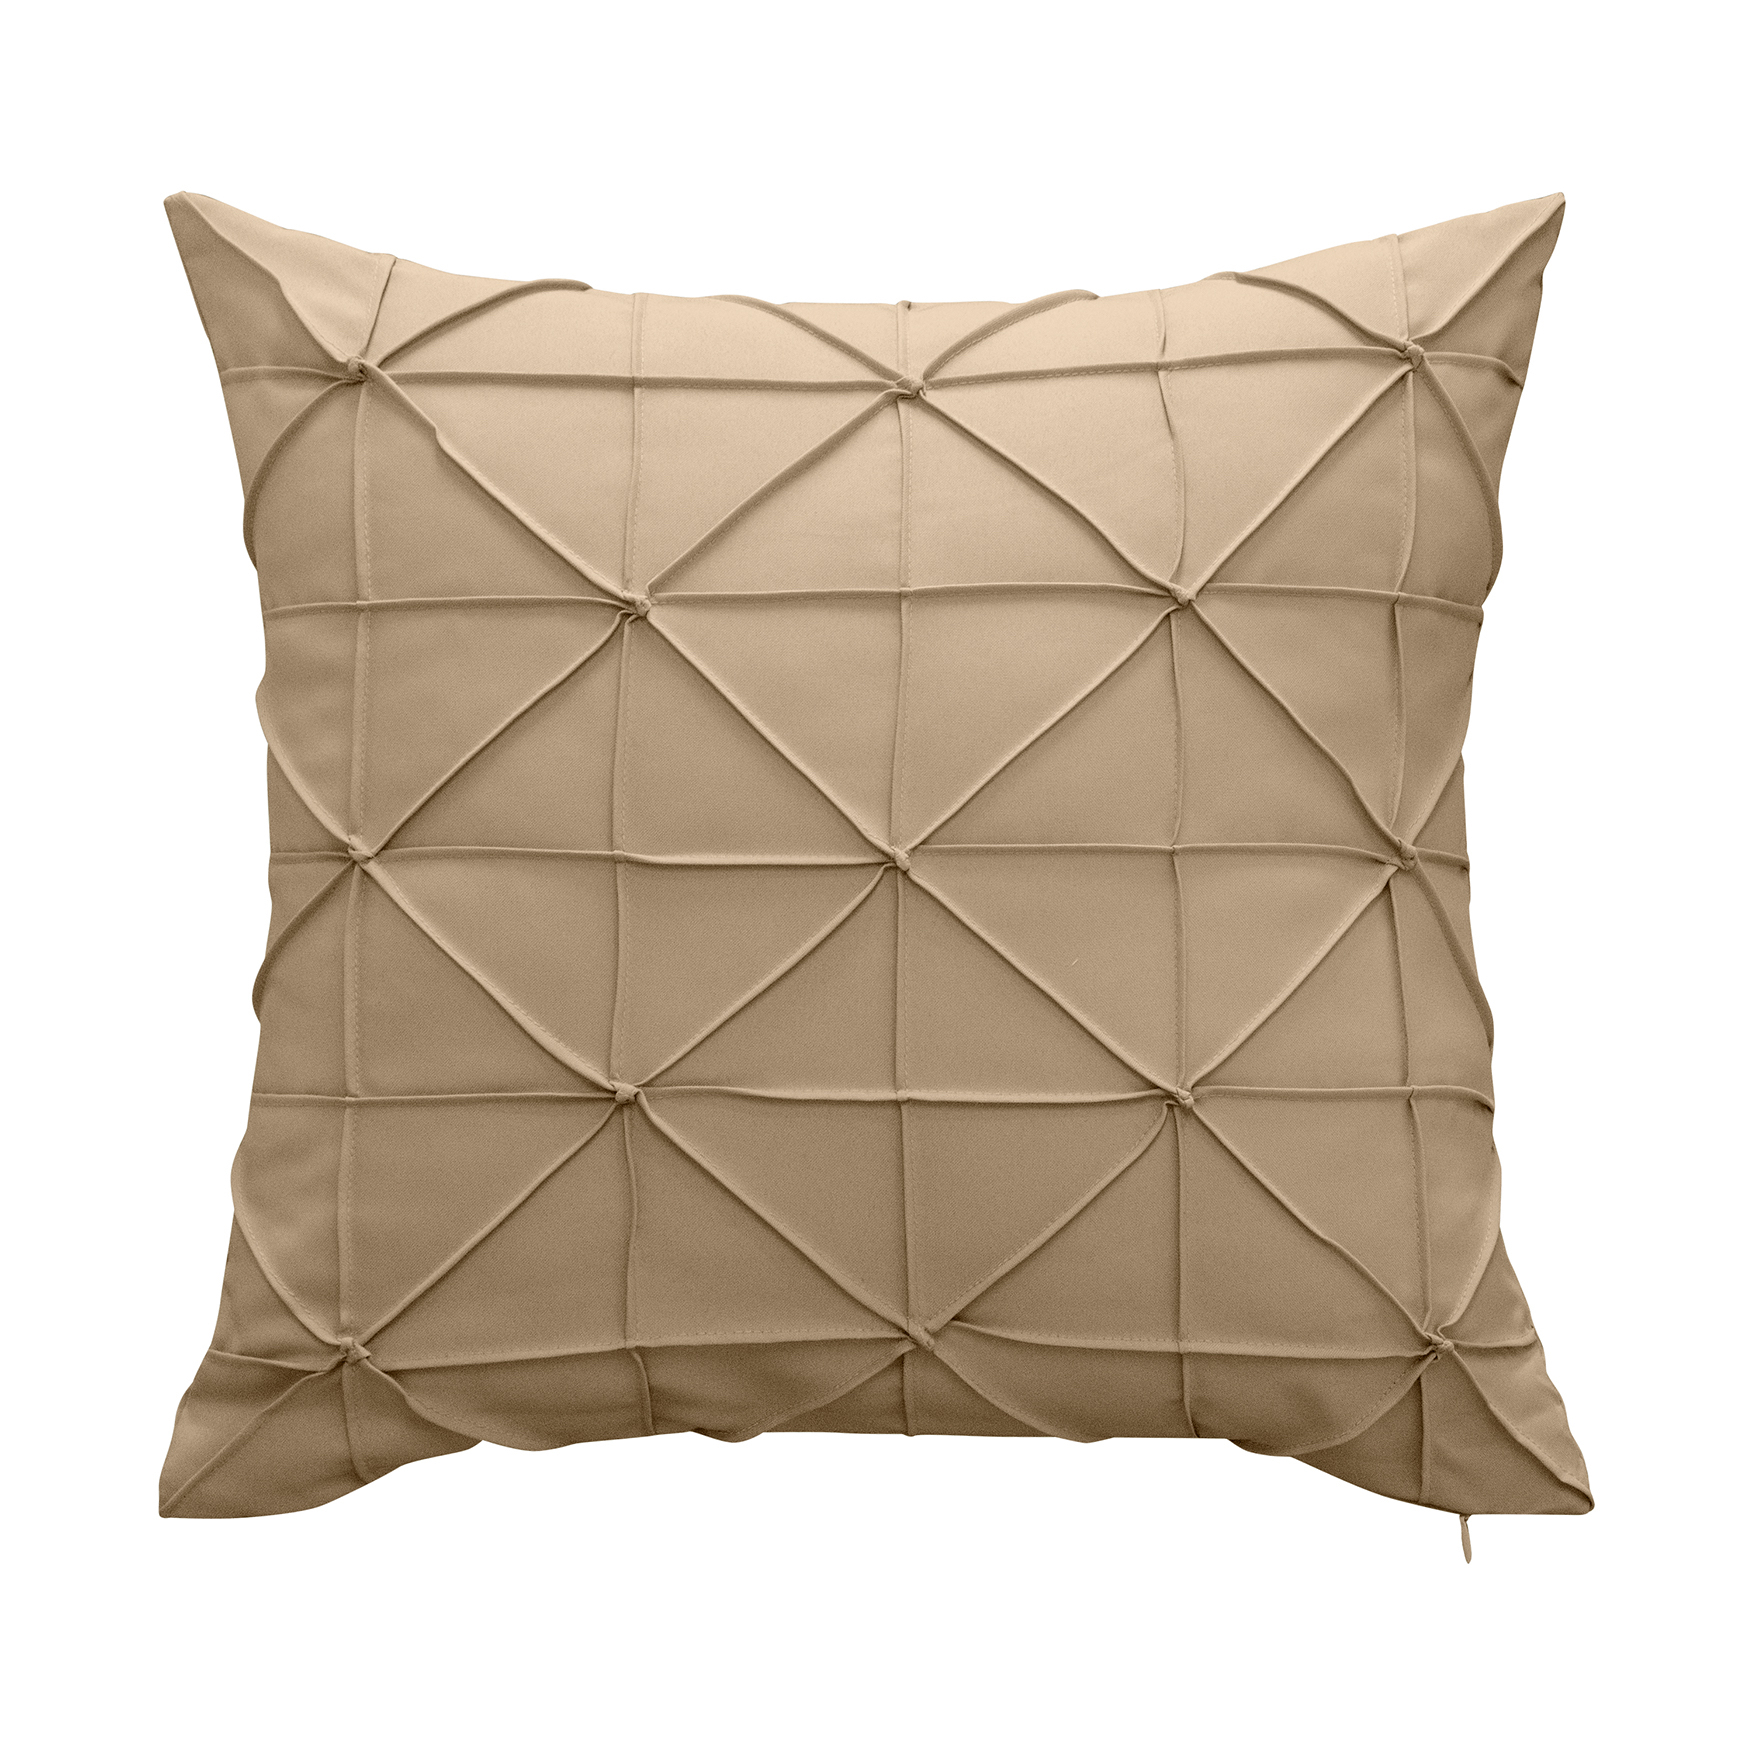 Indoor & Outdoor Fishnet Pleat Decorative Pillow, 